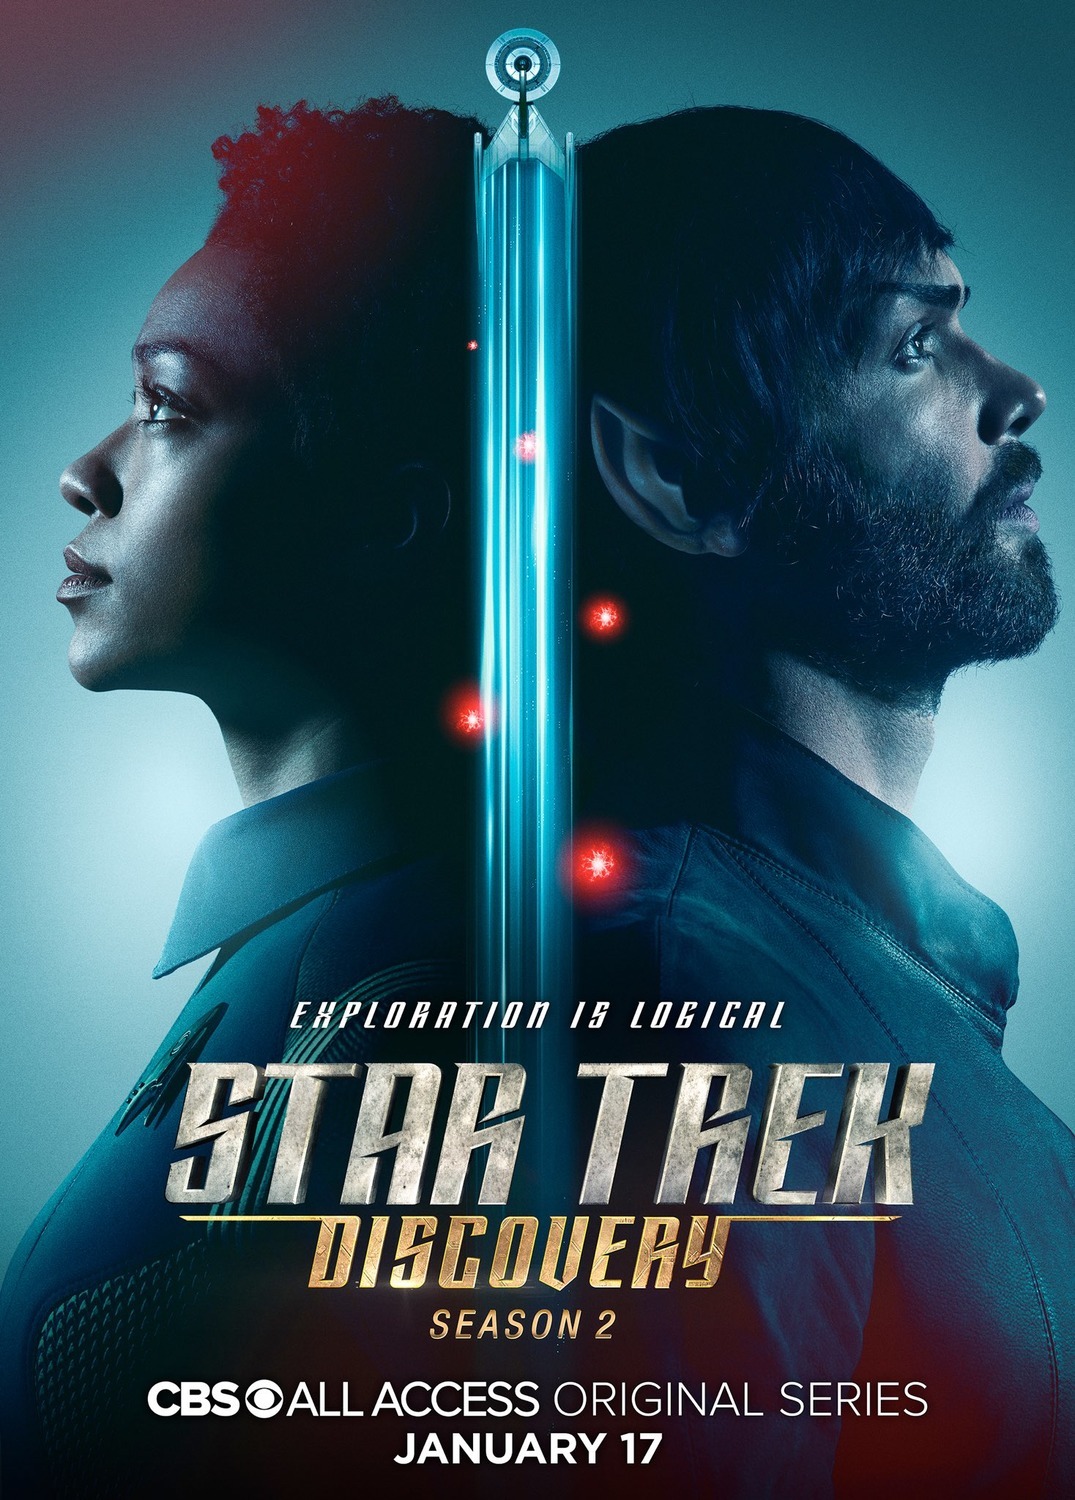 ดูหนังออนไลน์ Star Trek Discovery Season 2 EP.6 สตาร์ เทรค ดิสคัฟเวอรี่ ซีซั่นที่ 2 ตอนที่ 6